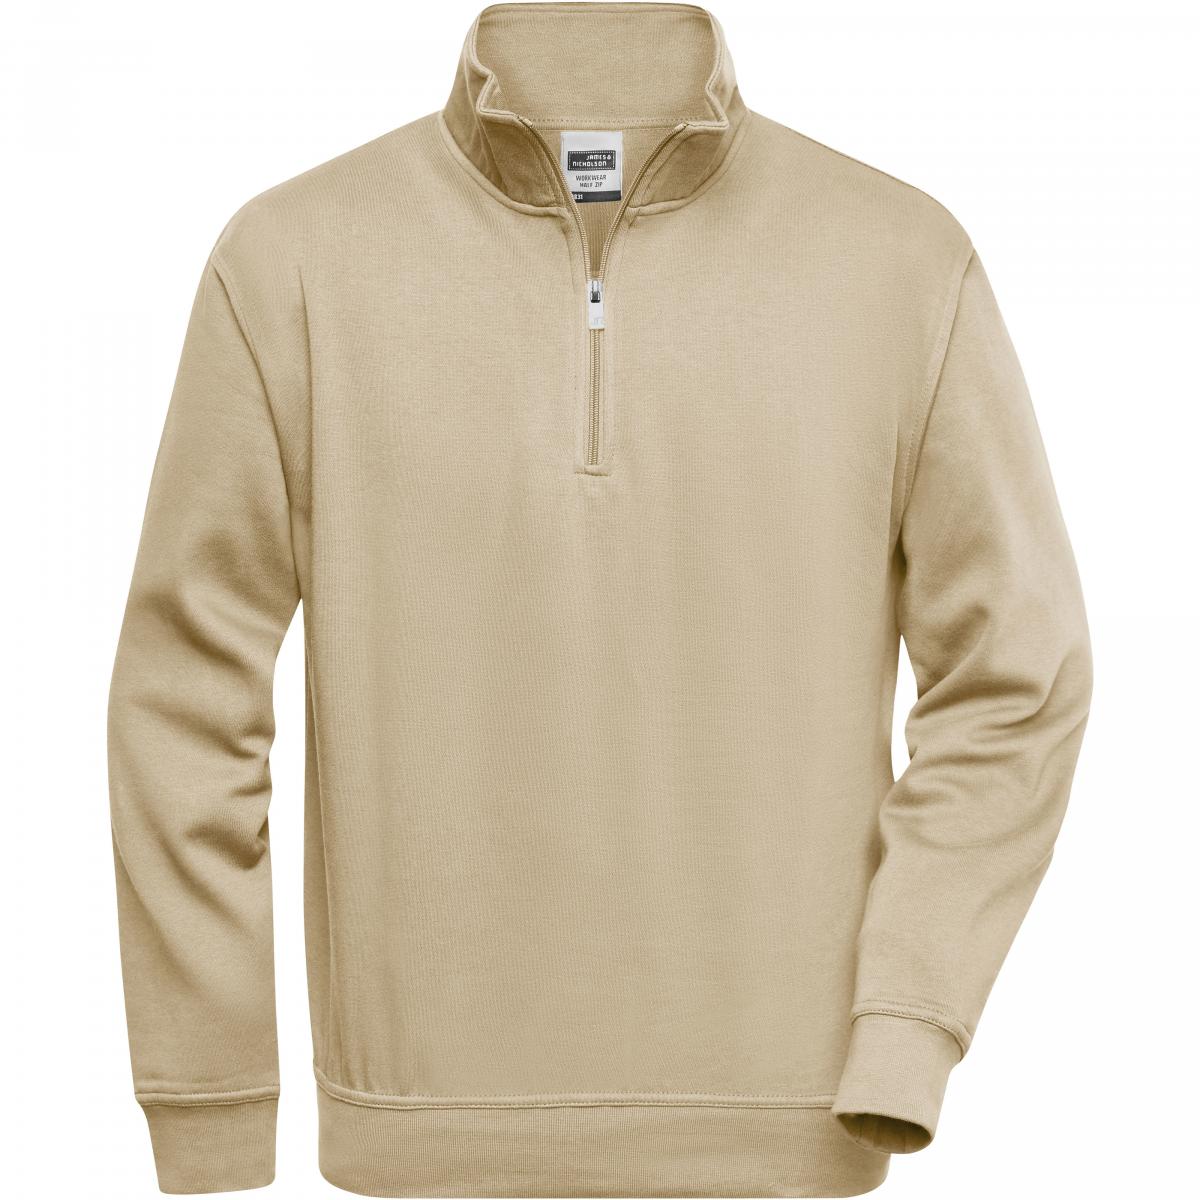 Hersteller: James+Nicholson Herstellernummer: JN831 Artikelbezeichnung: Workwear Half Zip Sweatshirt +Waschbar bis 60 °C Farbe: Stone